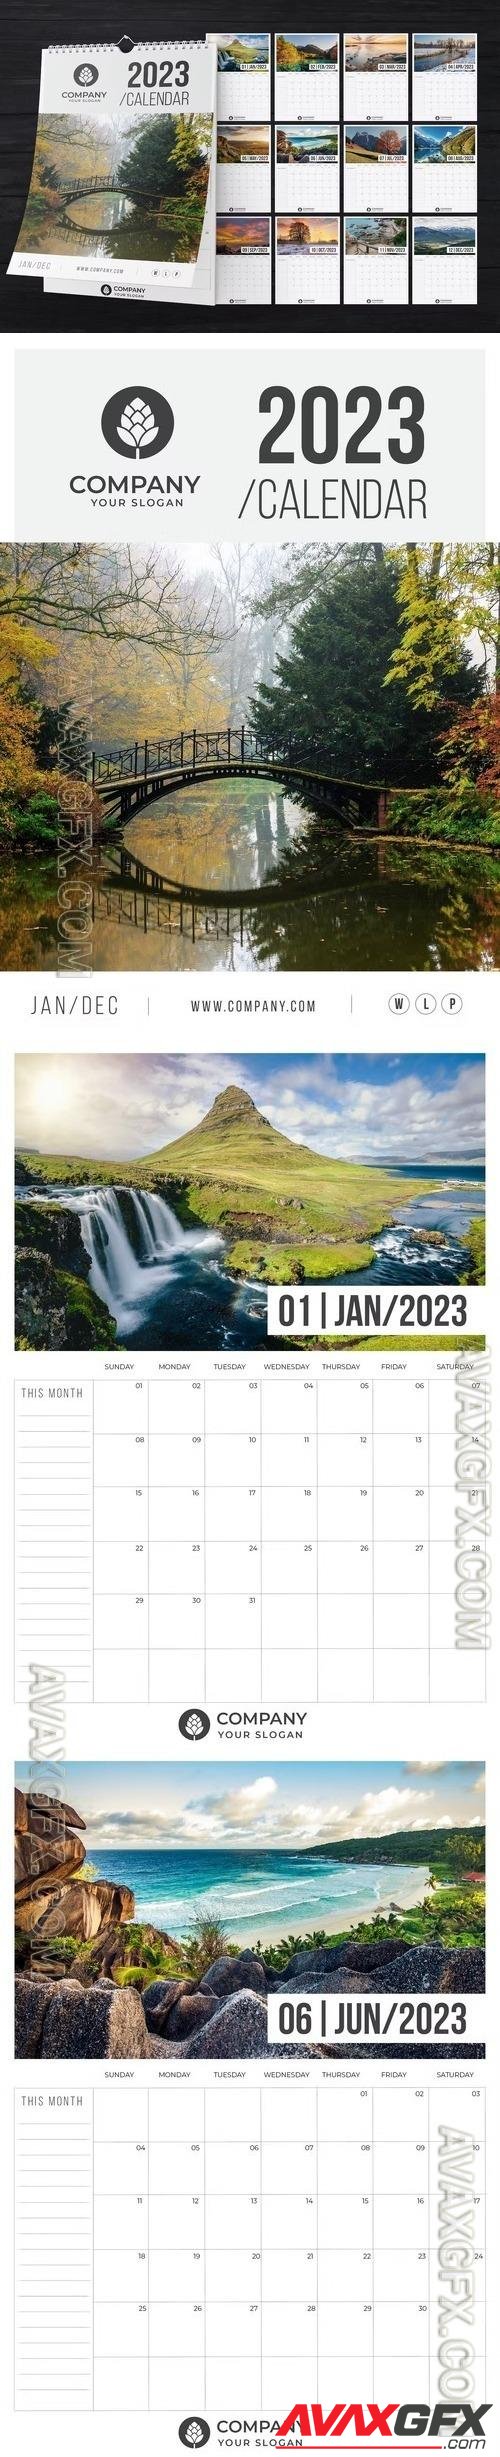 2023 Wall Calendar A4 Layout Template 6DJFR7K